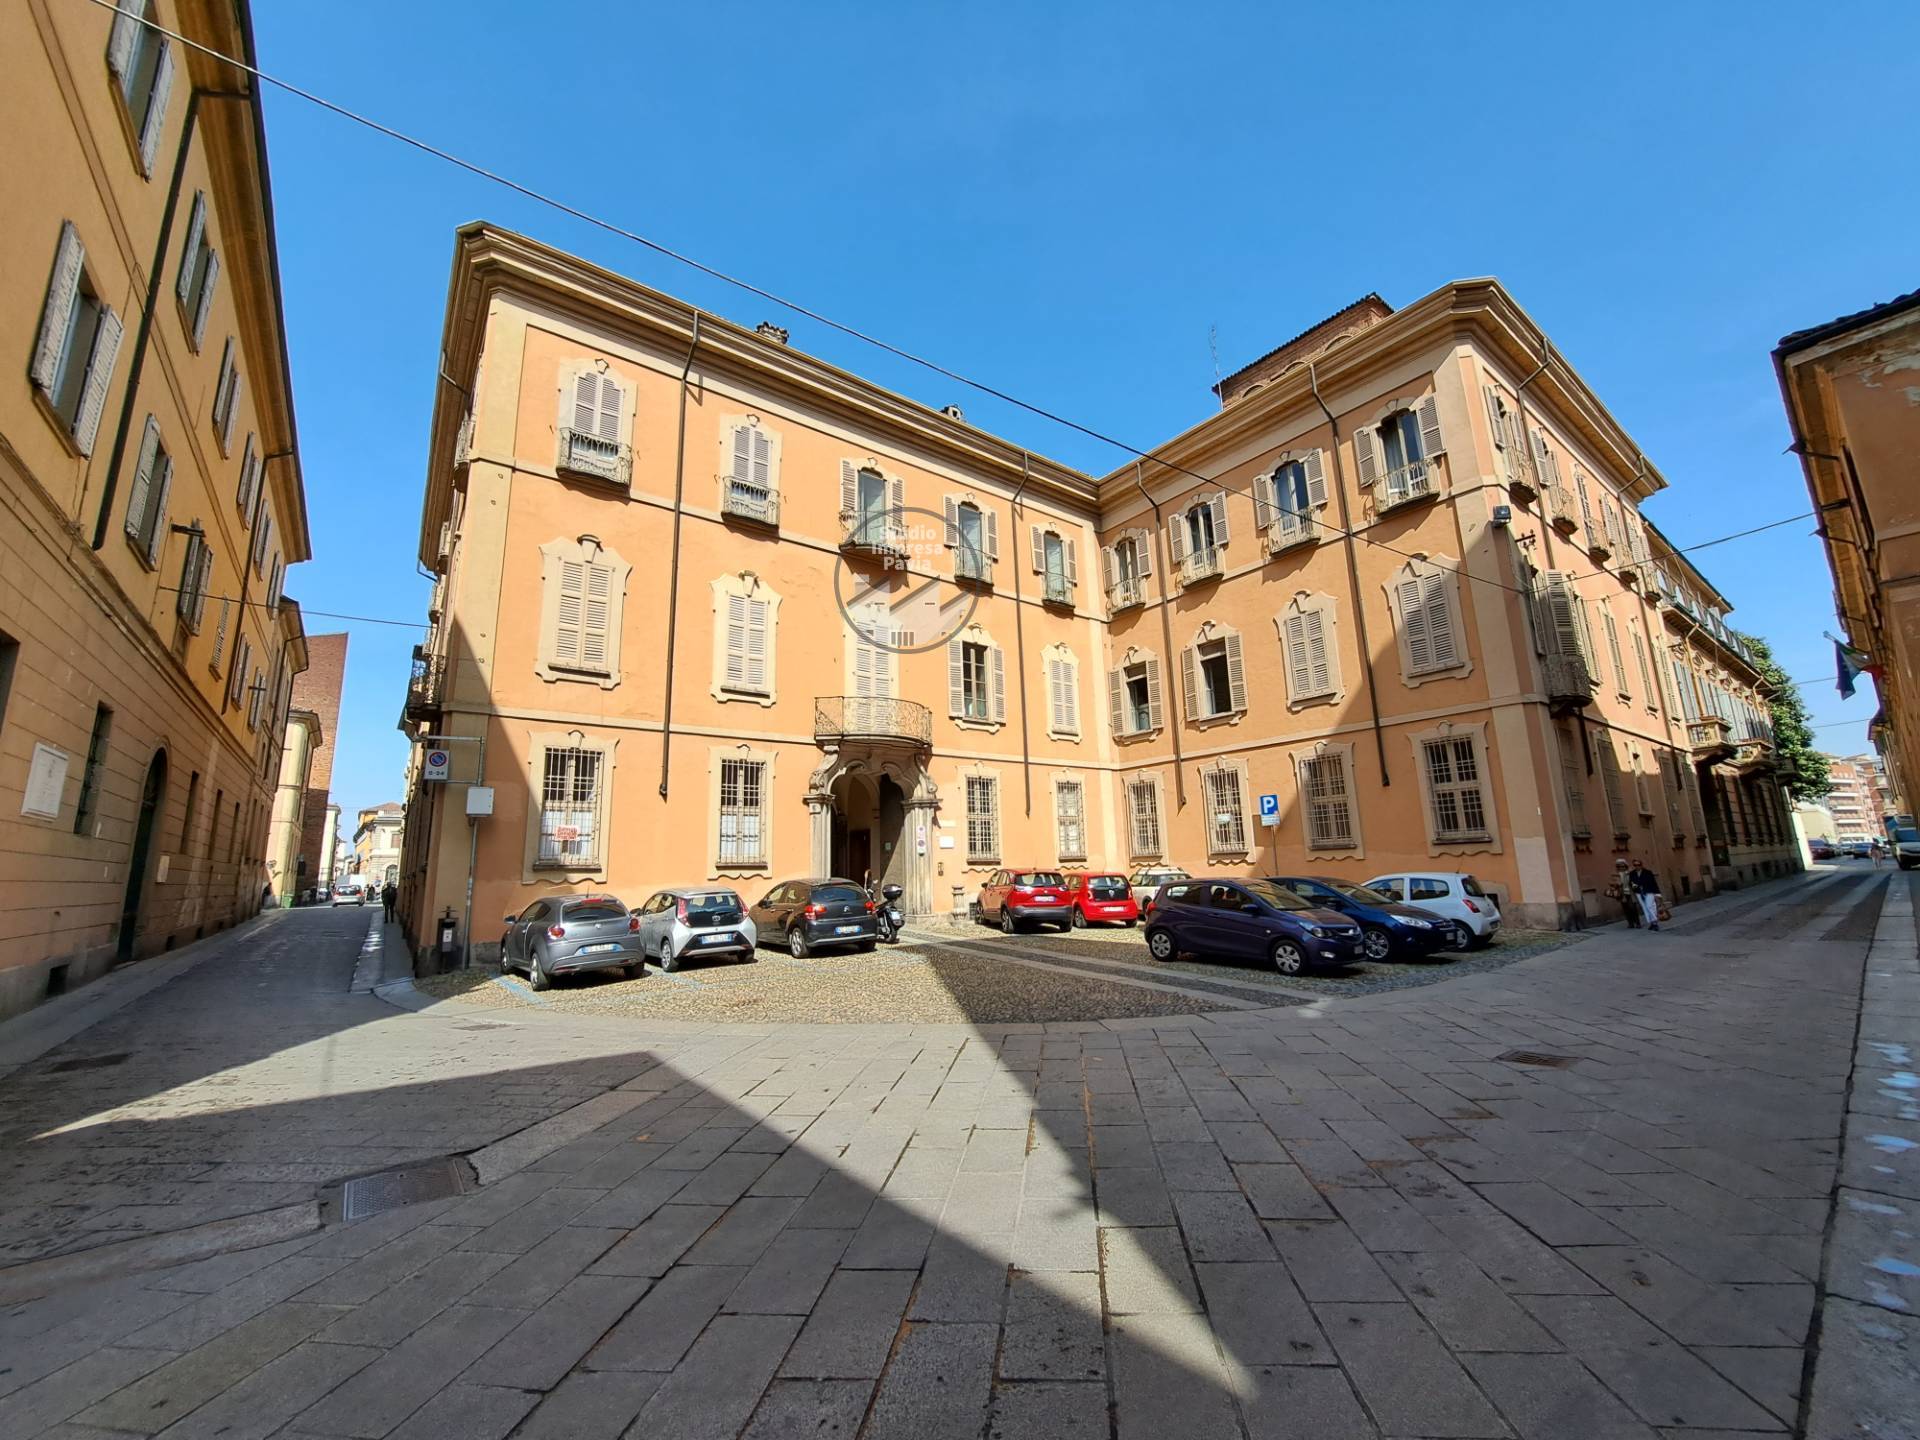 Ufficio / Studio in affitto a Pavia, 9999 locali, zona Località: CentroStorico, prezzo € 1.600 | PortaleAgenzieImmobiliari.it